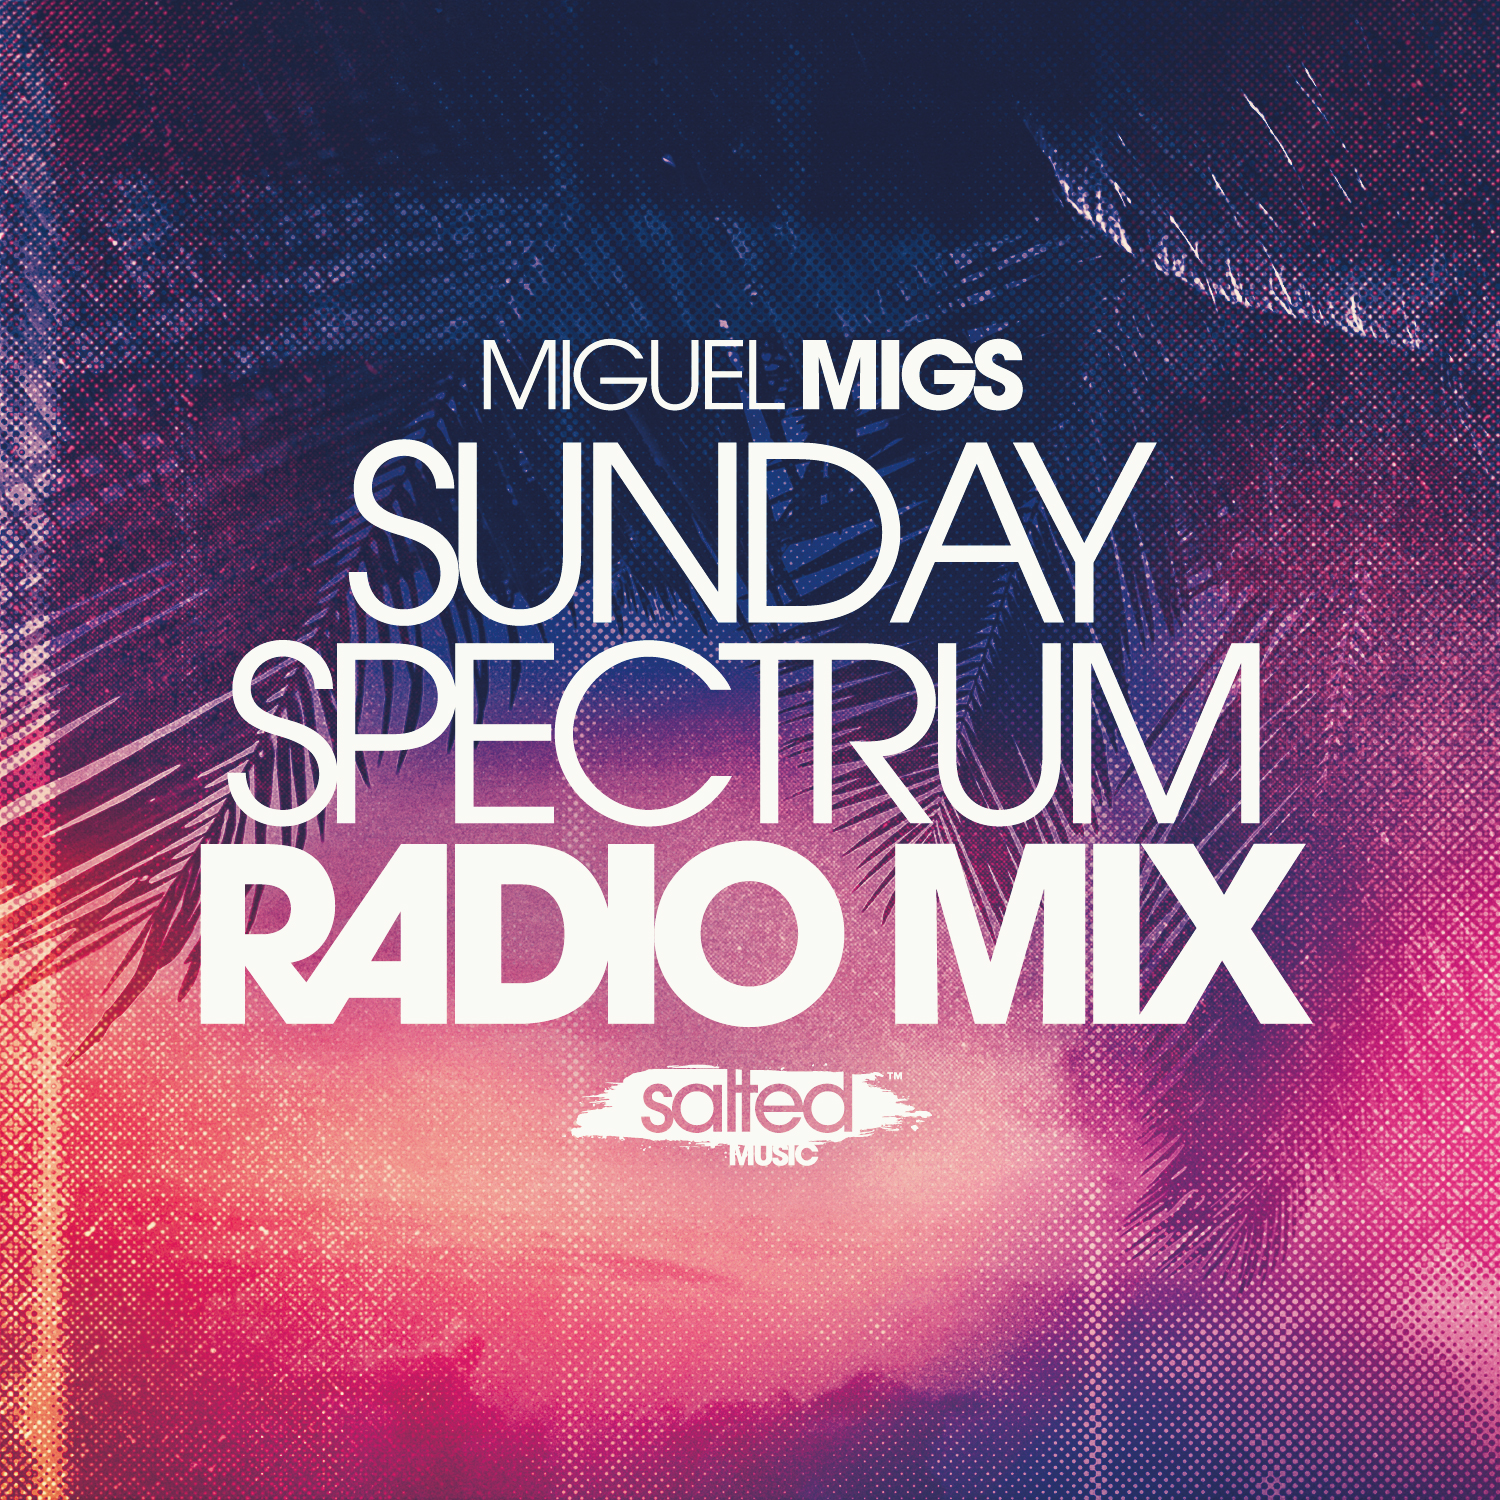 Miguel-Migs-Sunday-Spectrum-dj-radio-mix-2016